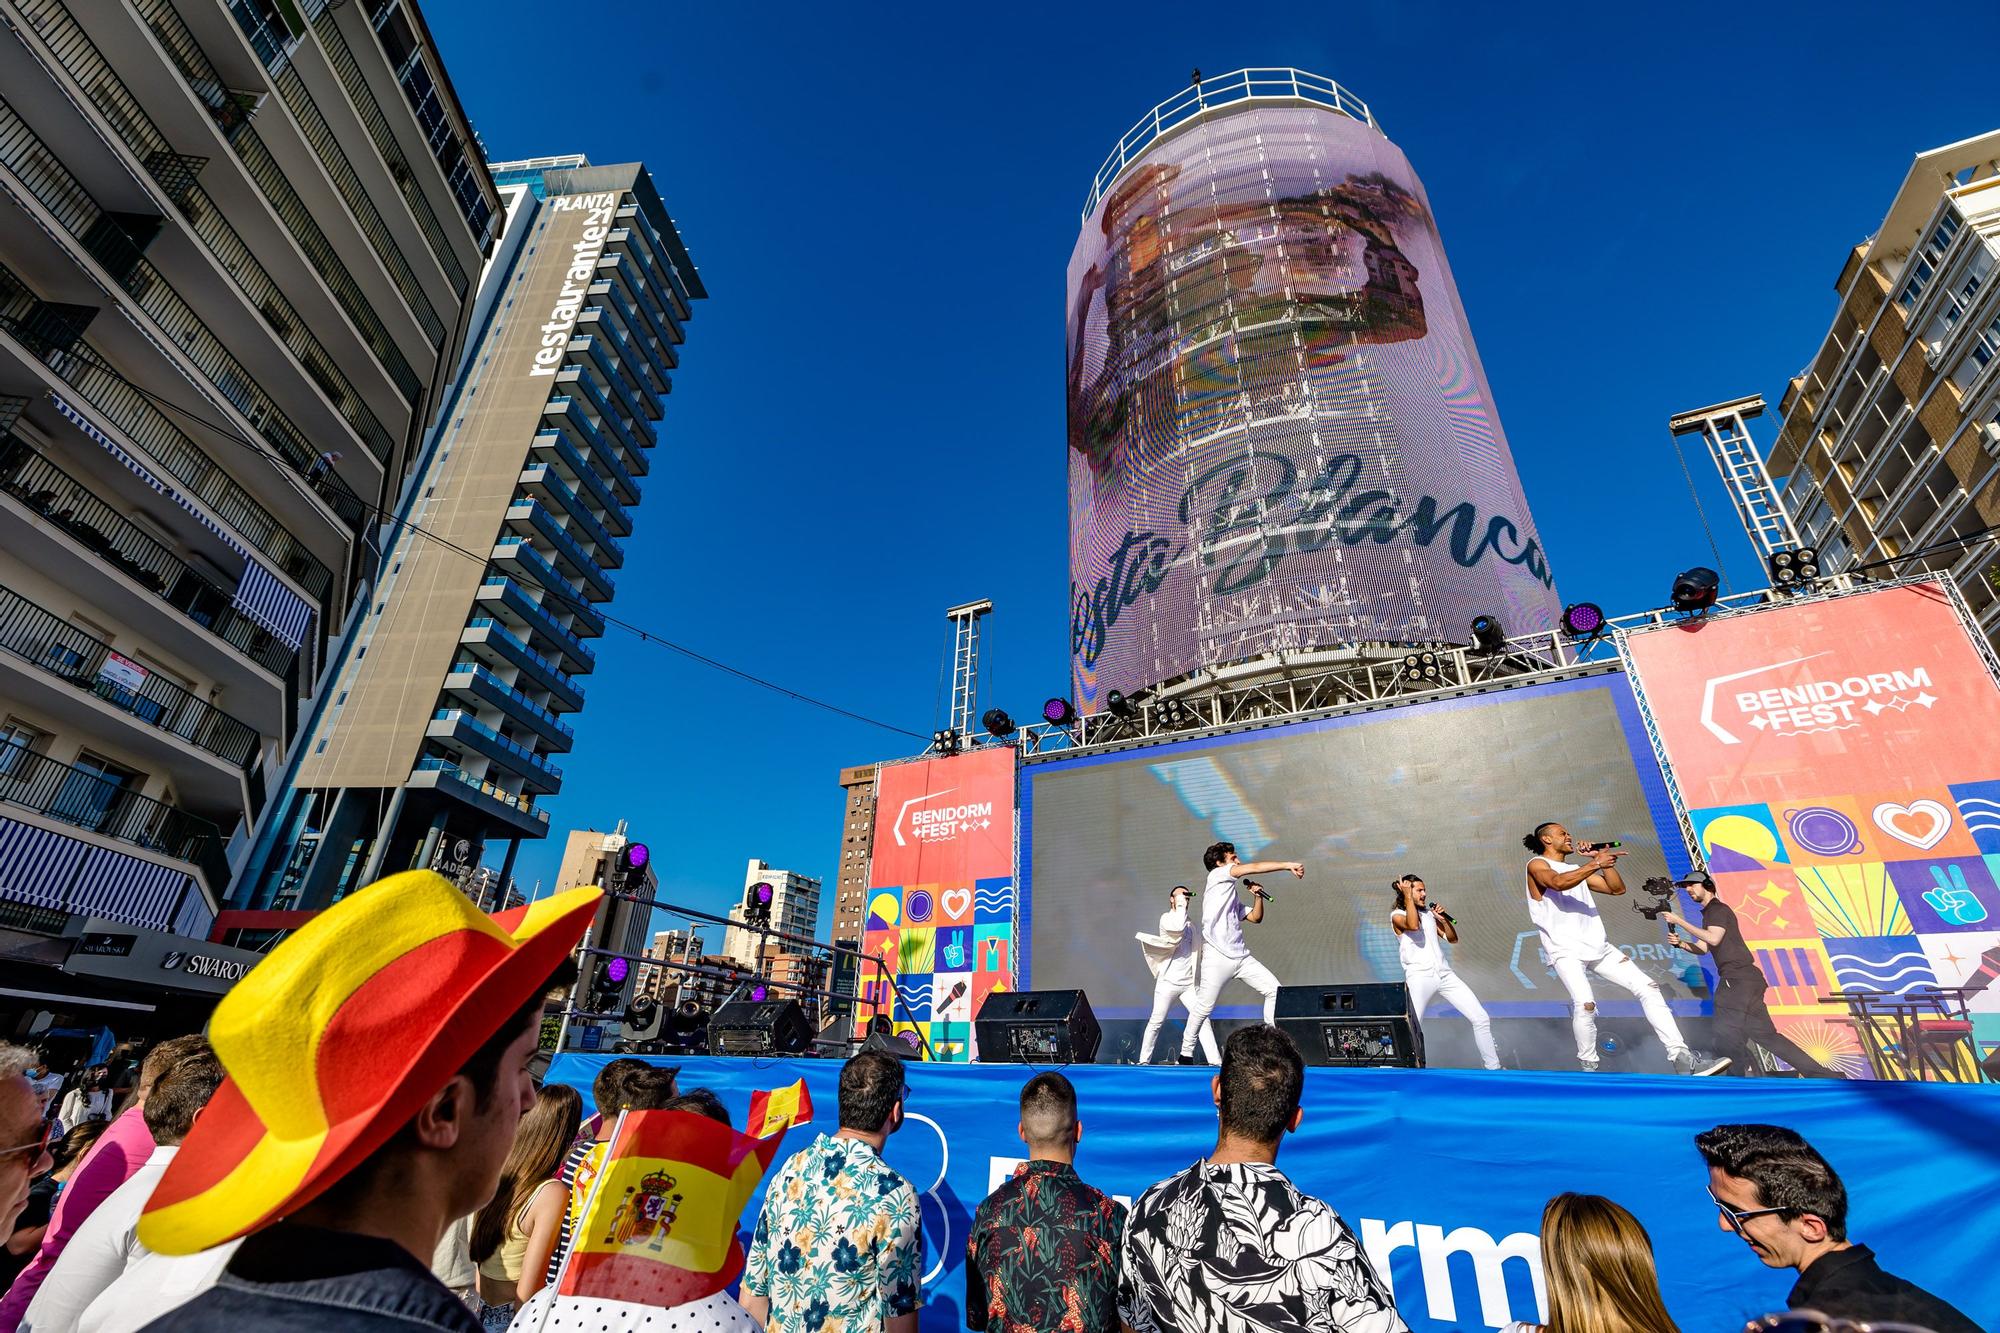 El "tecnohito" de Benidorm, icono de promoción turística La torre de 18 metros de altura se convierte en uno de los protagonistas de la celebración de Eurovisión y en uno de los enclaves turísticos